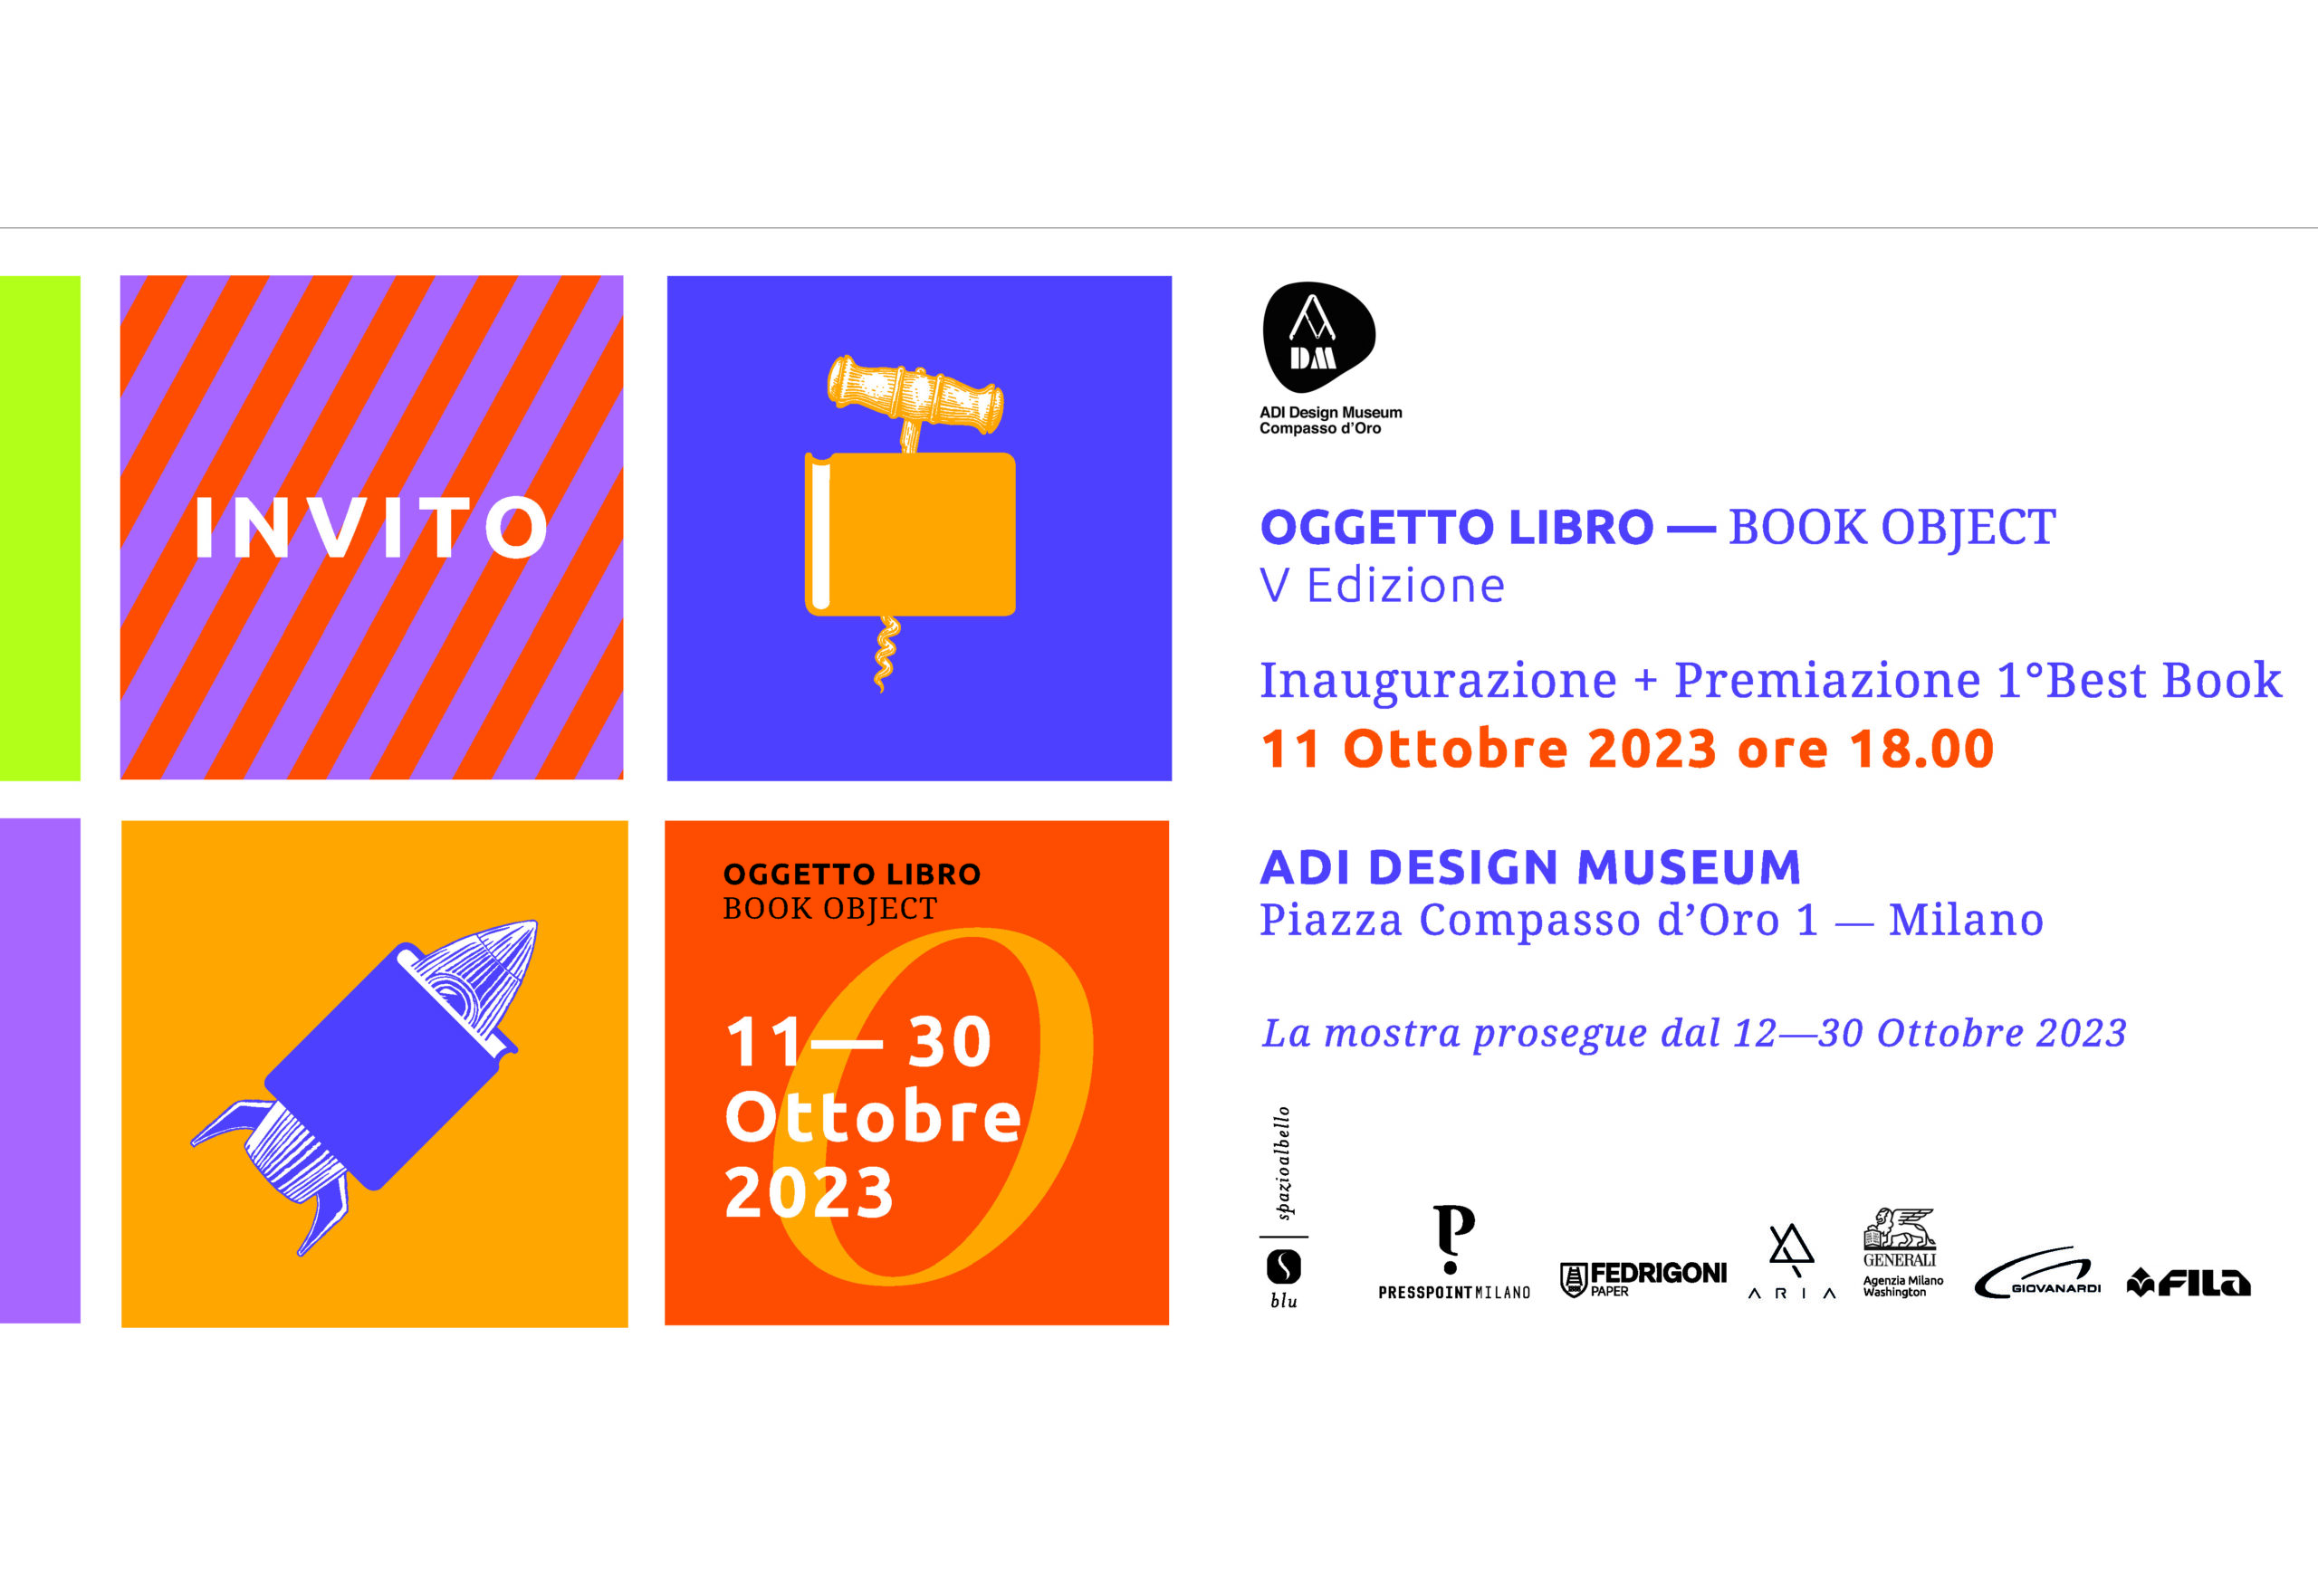 11 Ottobre 2023 OGGETTO LIBRO - BOOK  OBJECT   Piazza Compasso d’oro 1, Milano